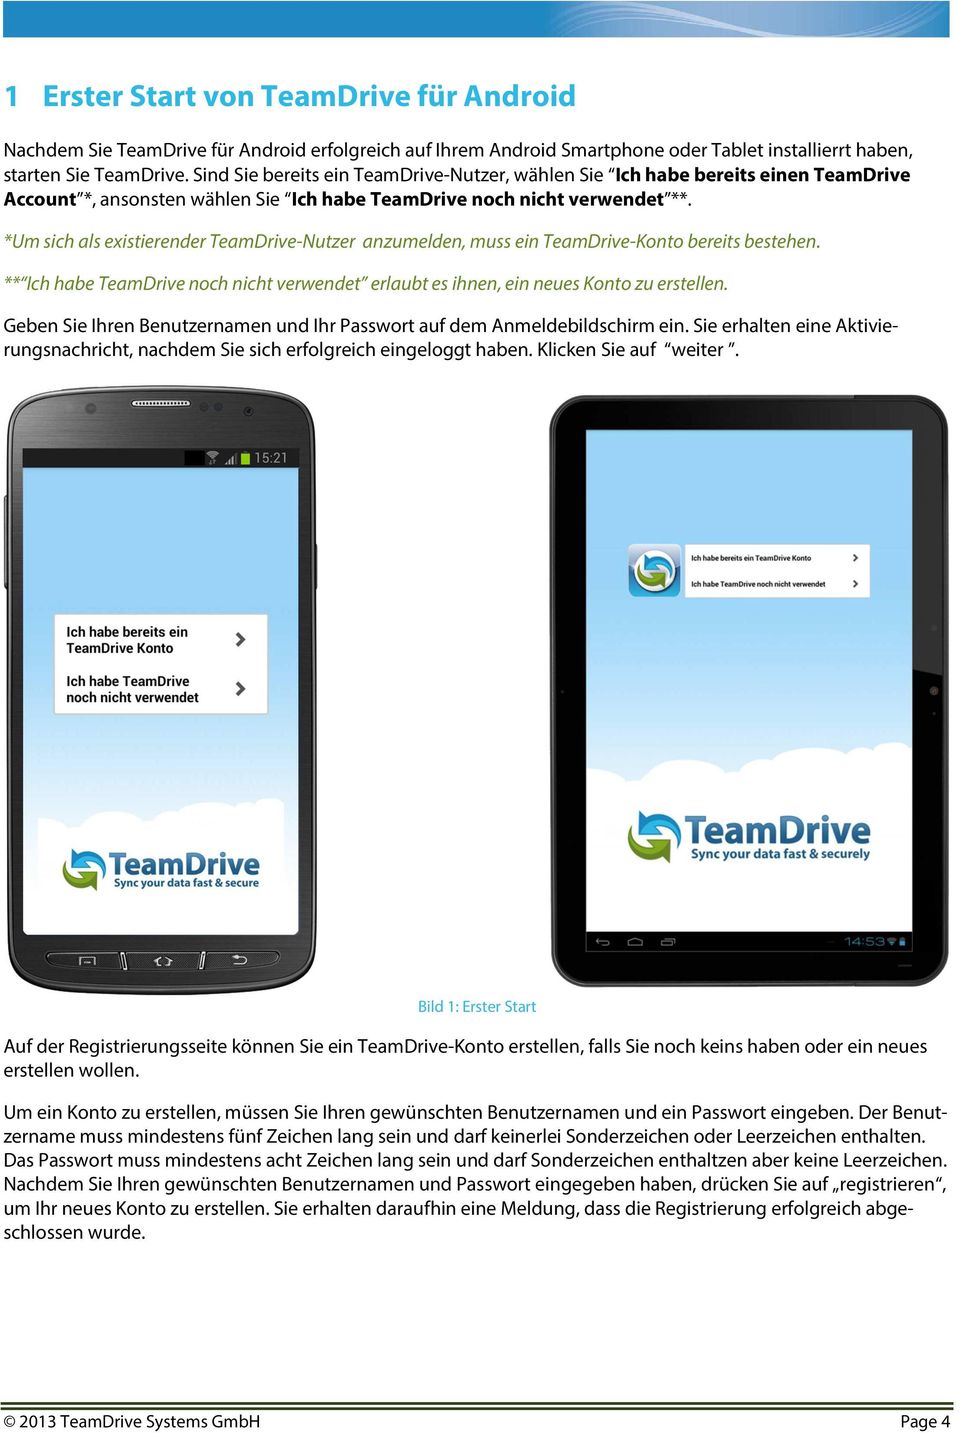 *Um sich als existierender TeamDrive-Nutzer anzumelden, muss ein TeamDrive-Konto bereits bestehen. ** Ich habe TeamDrive noch nicht verwendet erlaubt es ihnen, ein neues Konto zu erstellen.